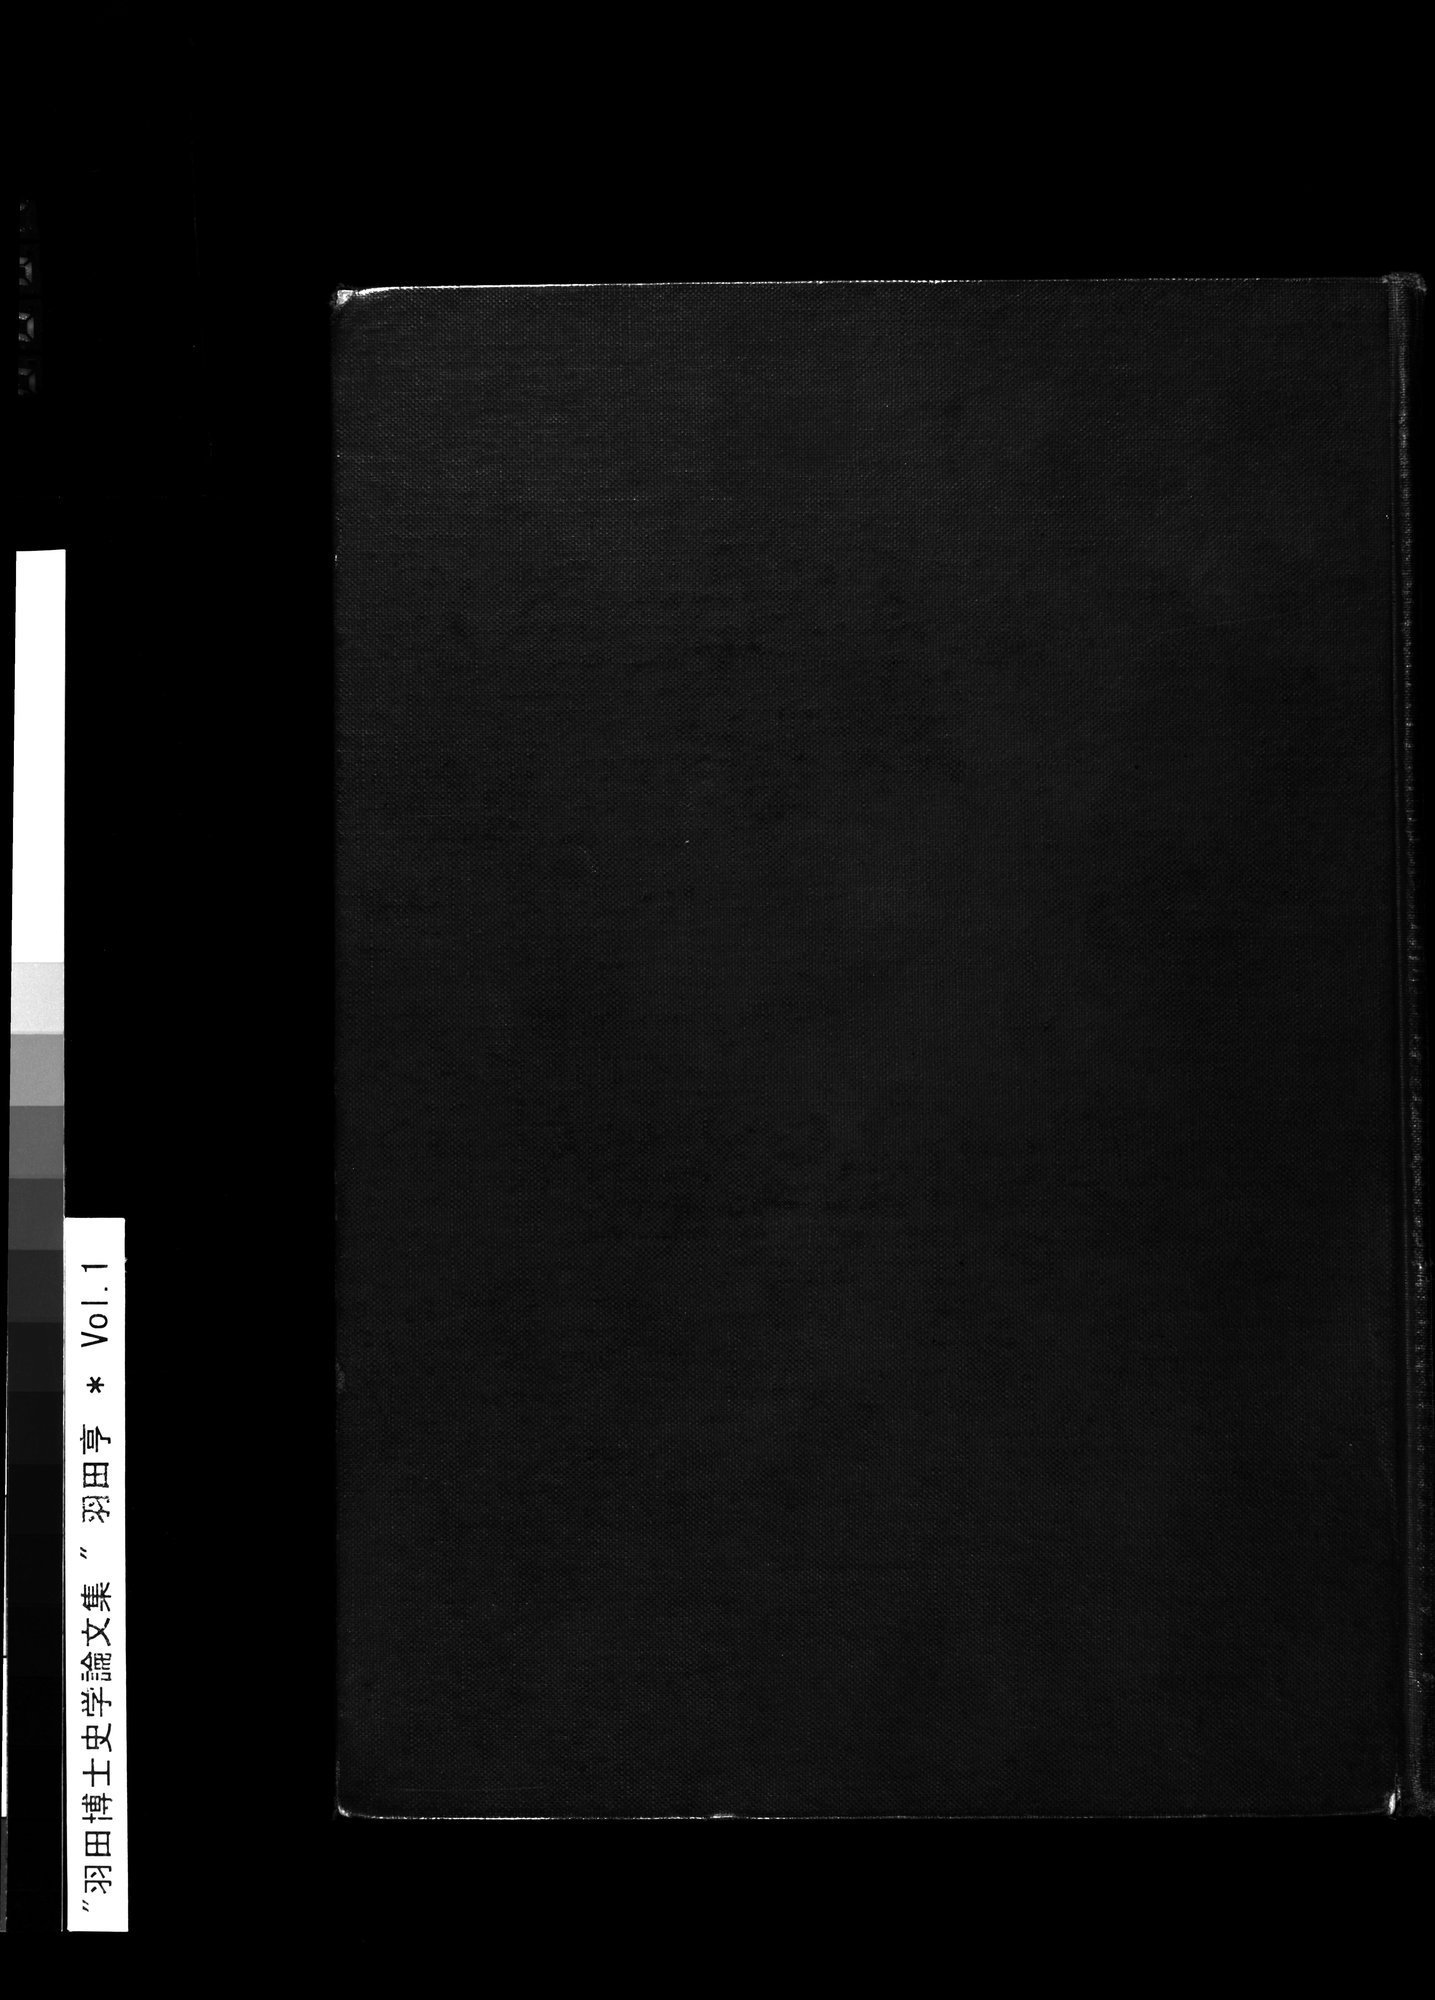 羽田博士史学論文集 : vol.1 / Page 1 (Grayscale High Resolution Image)